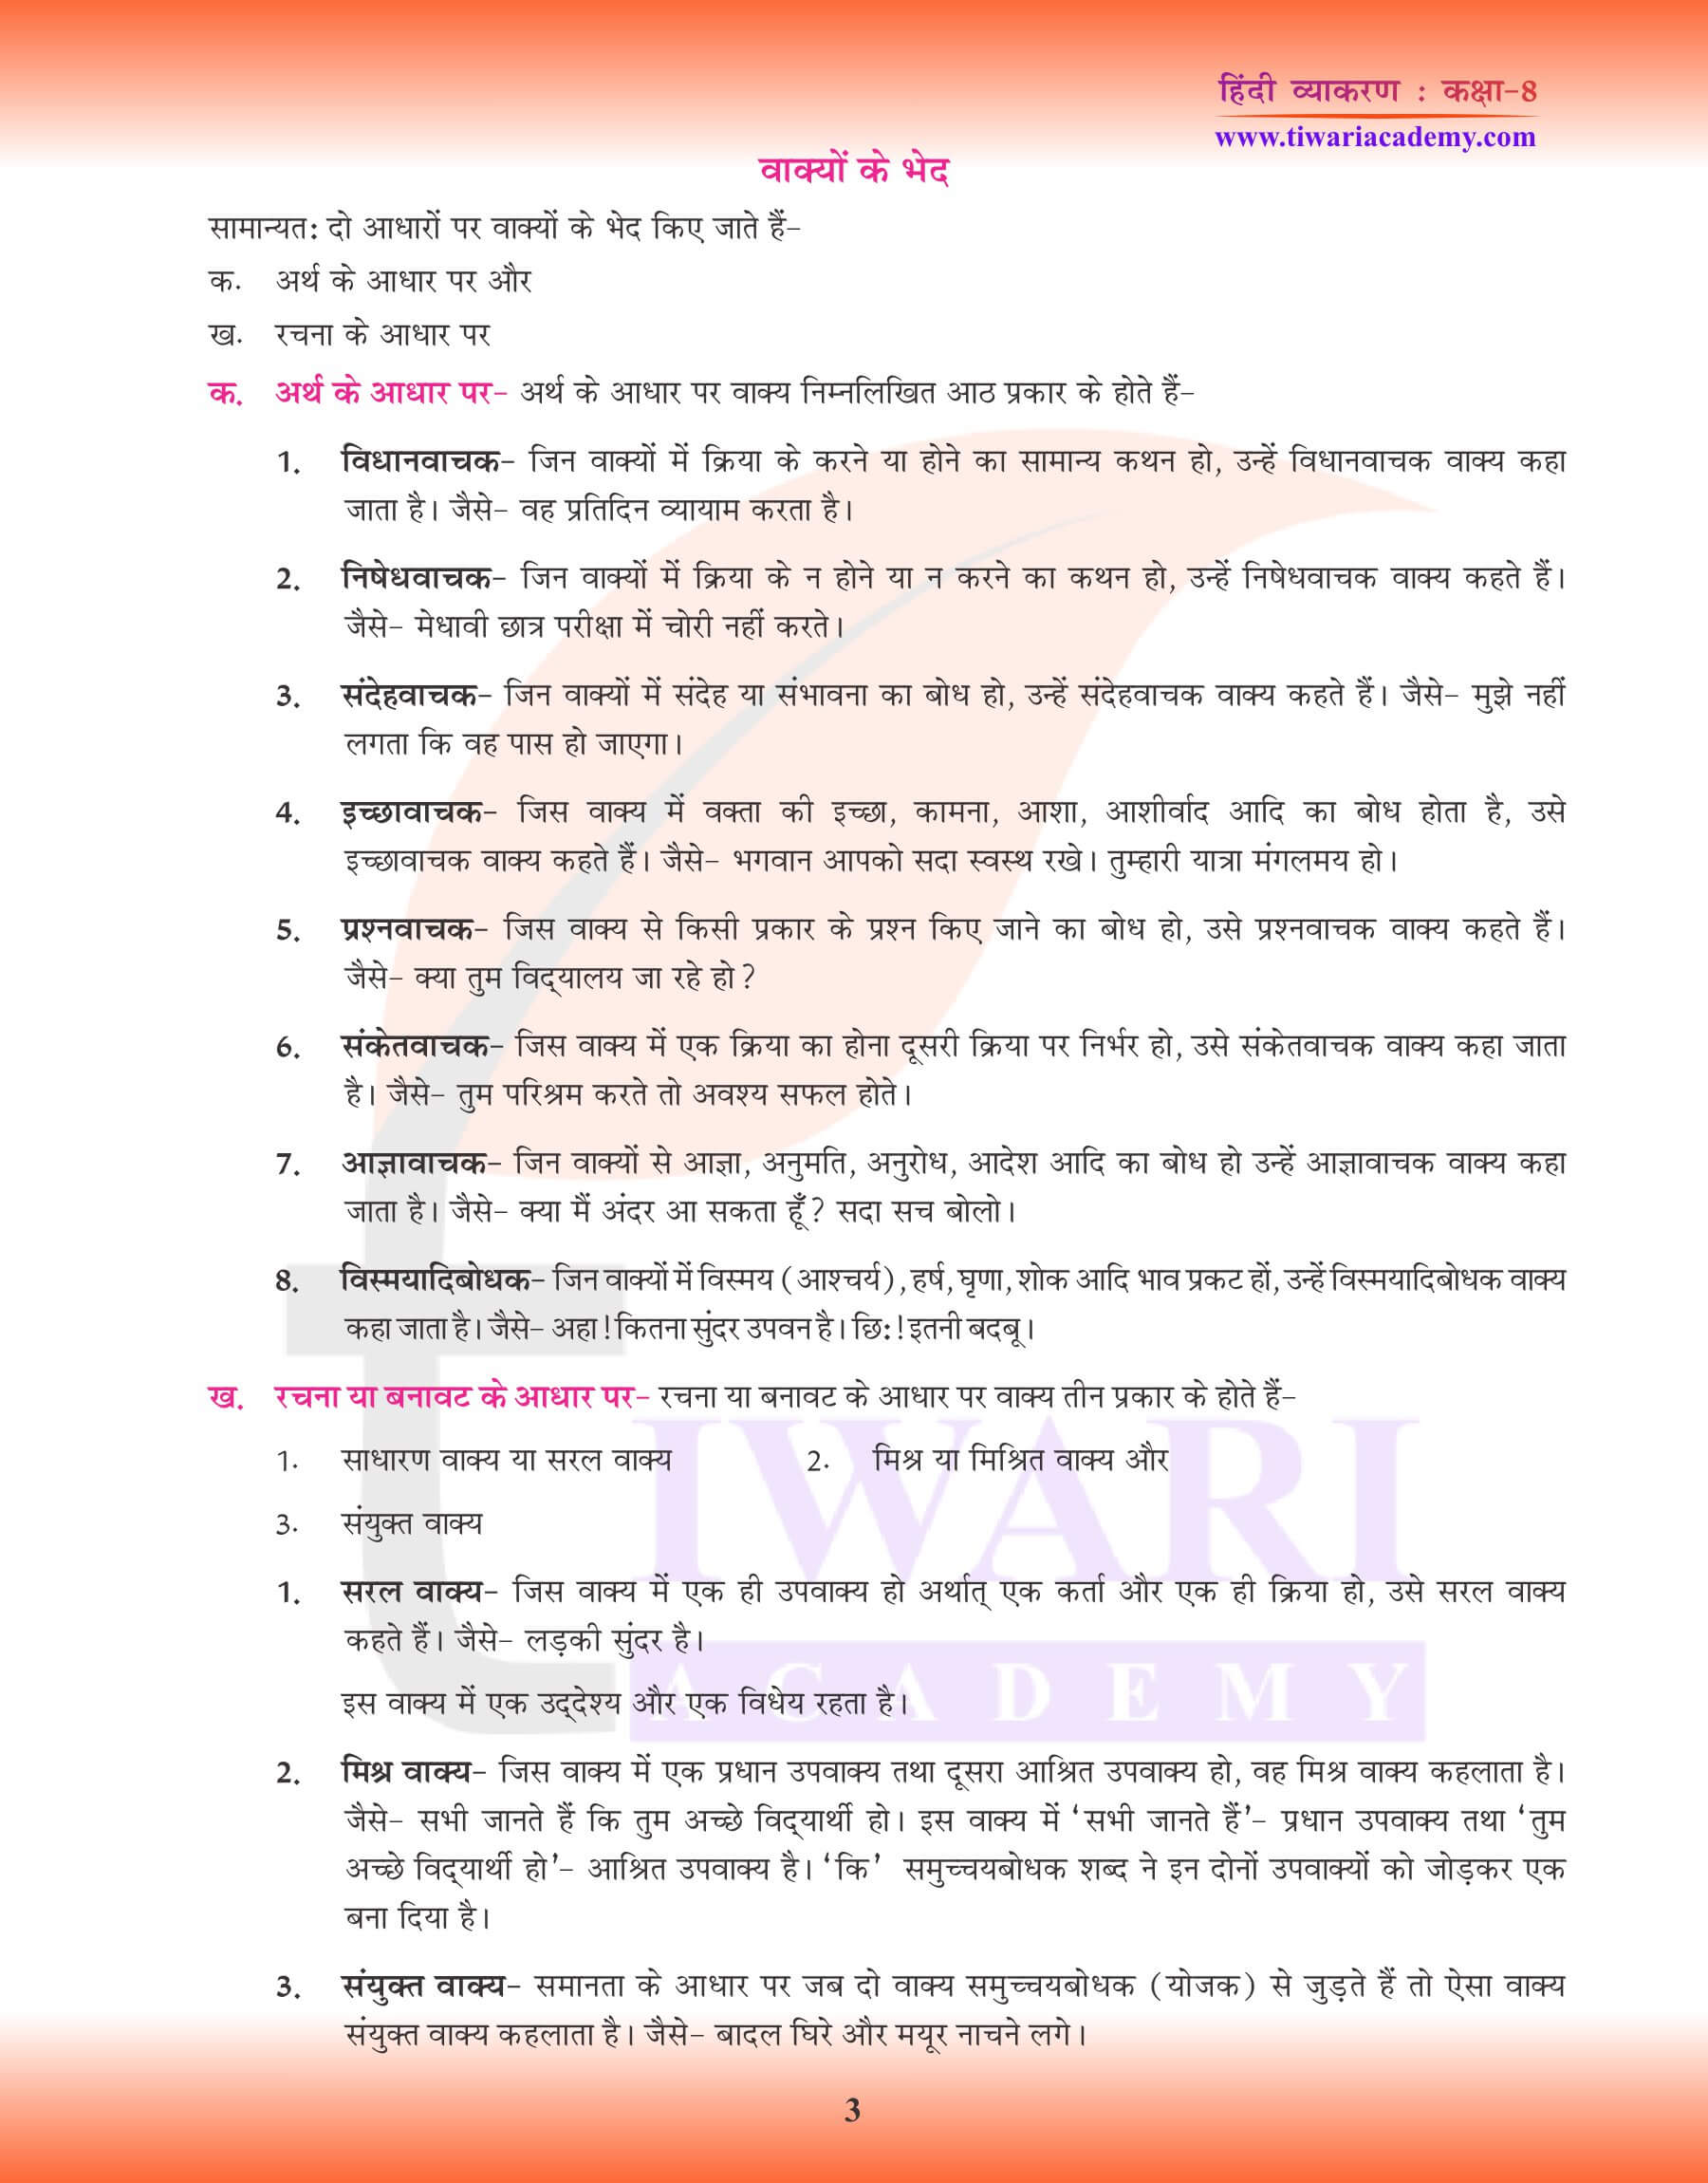 कक्षा 8 हिंदी व्याकरण वाक्य विचार के प्रश्न उत्तर